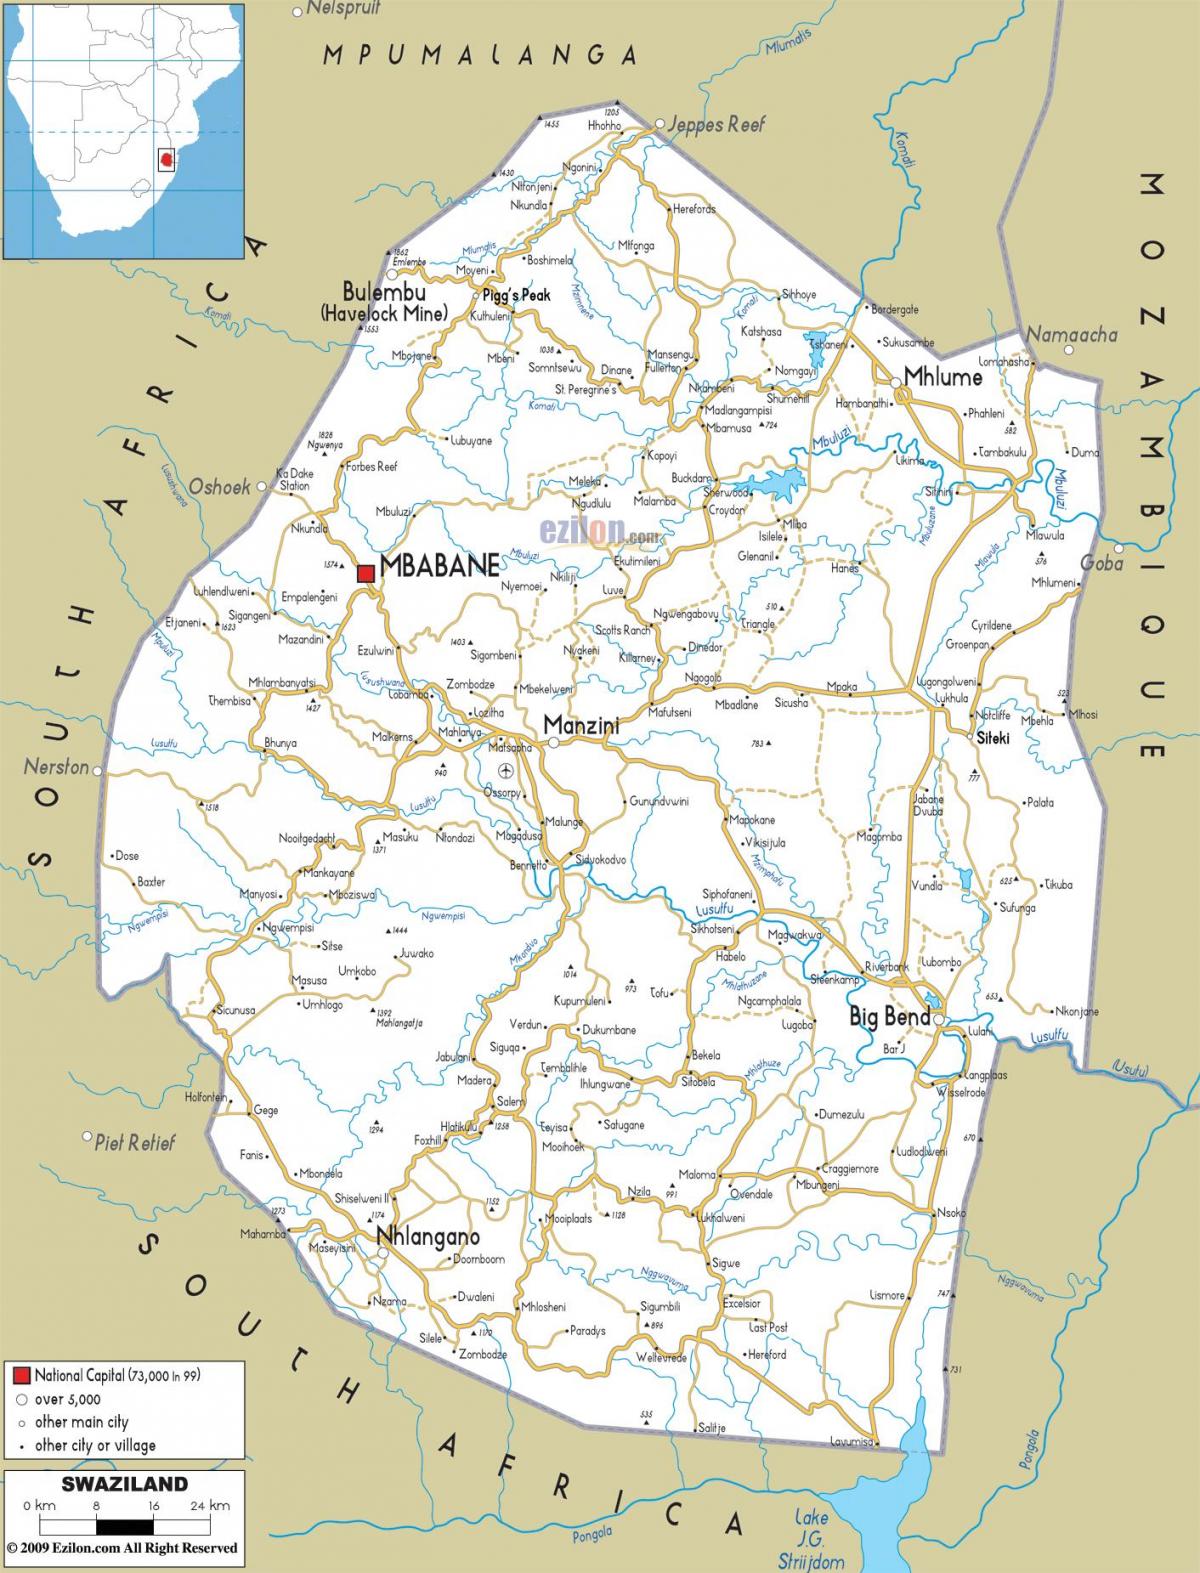 die kaart van Swaziland